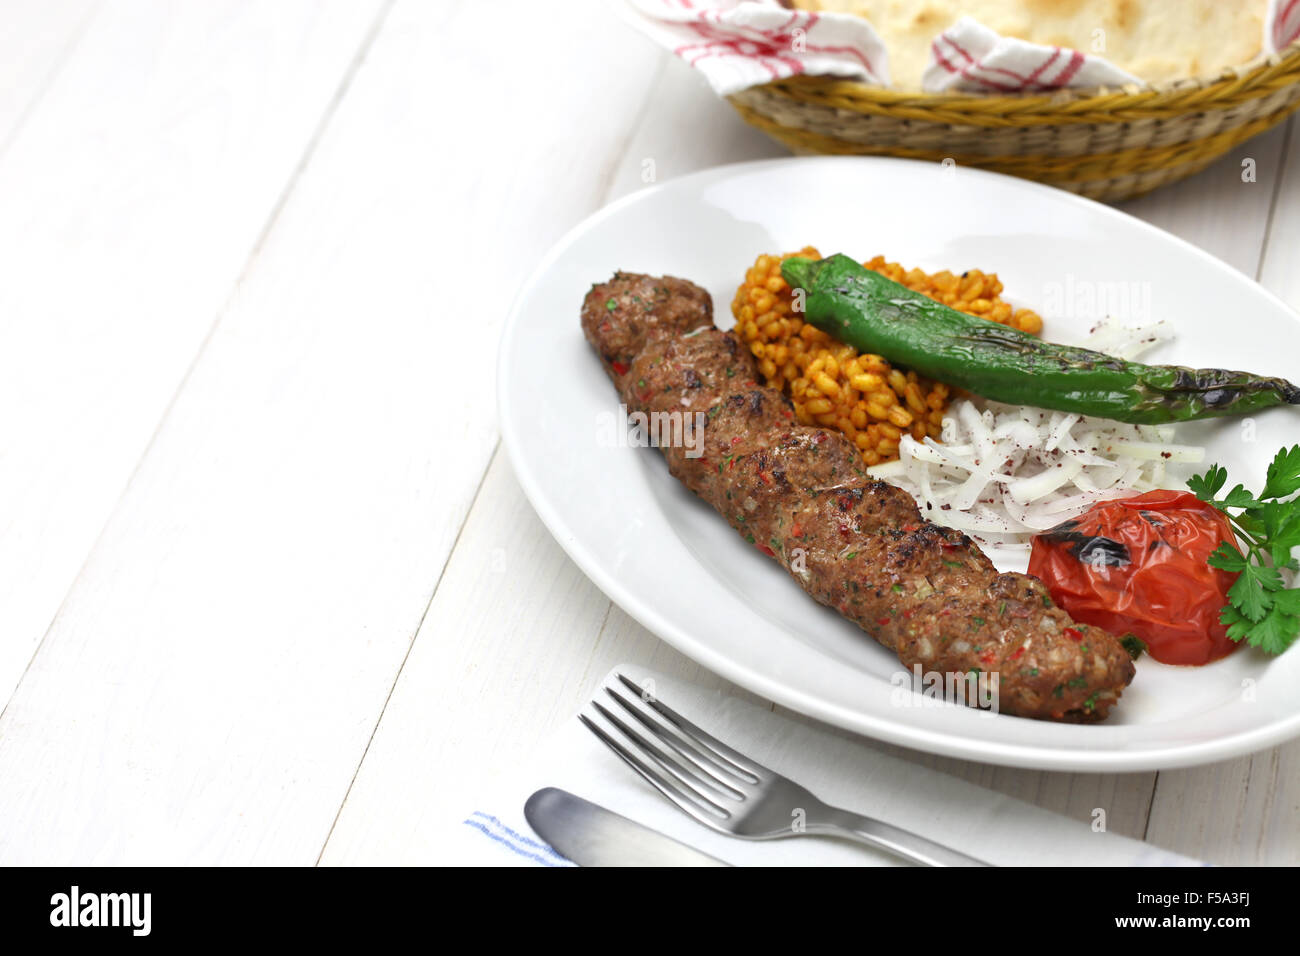 adana kebab, minced meat kebab, turkish food Stock Photo